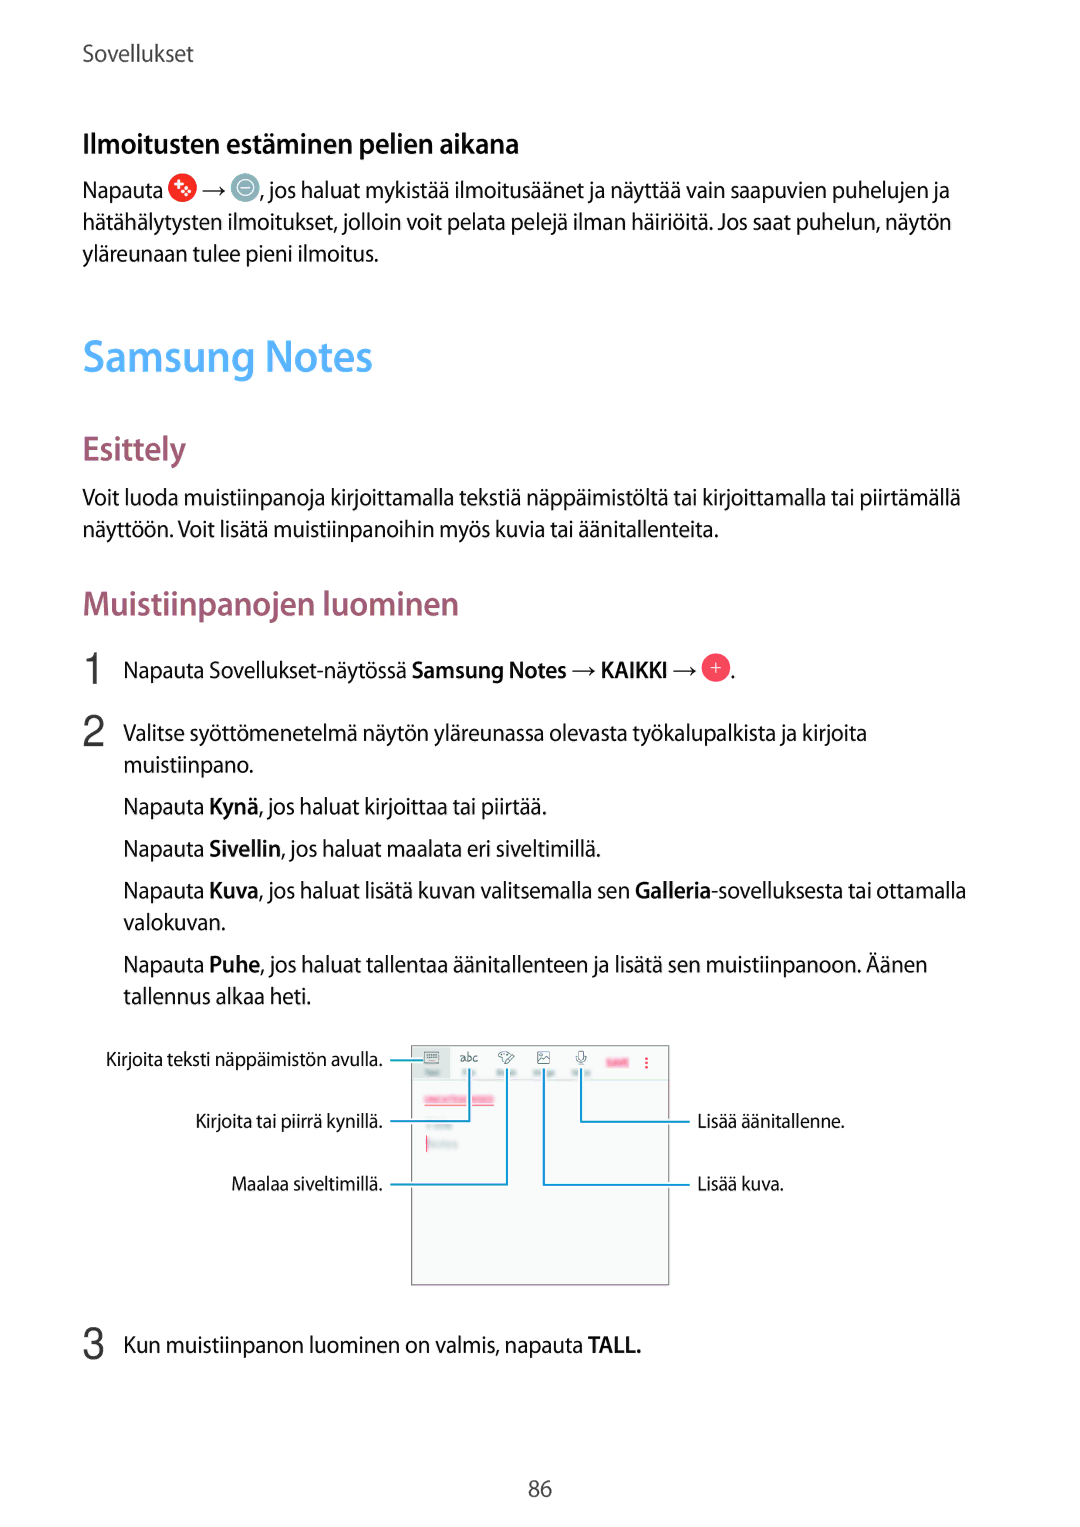 Samsung SM-J330FZSDNEE, SM-J330FZDDNEE manual Samsung Notes, Muistiinpanojen luominen, Ilmoitusten estäminen pelien aikana 